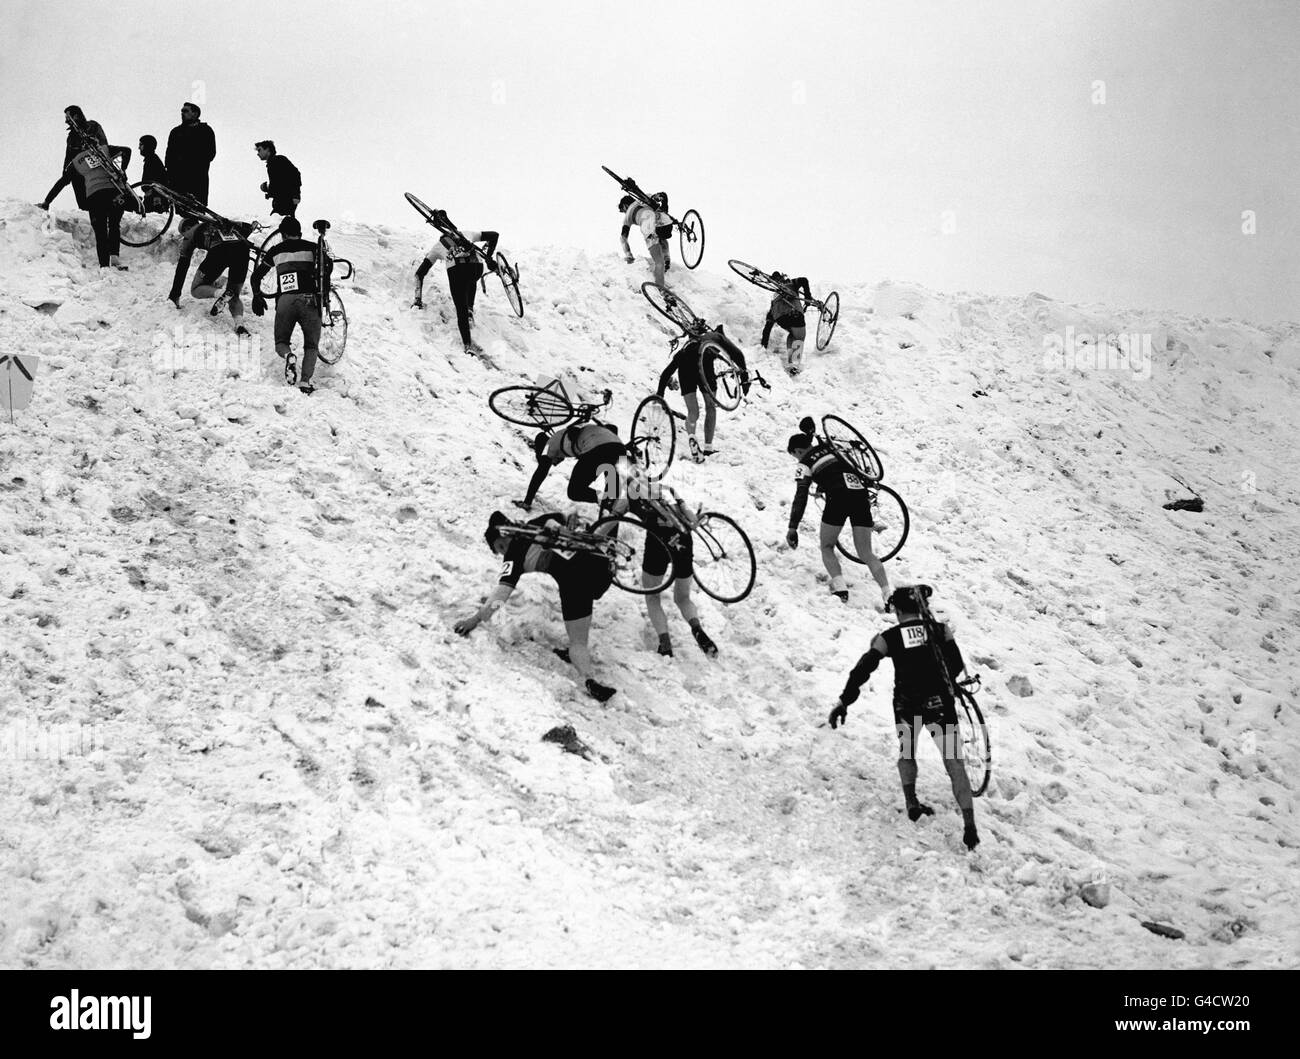 Ciclismo - 1963 Campeonato Nacional Británico de Cruce Cíclico - Harlow Town Park. Los competidores se esfuerzan por llegar a la cima de una pendiente cubierta de nieve durante la carrera. Foto de stock